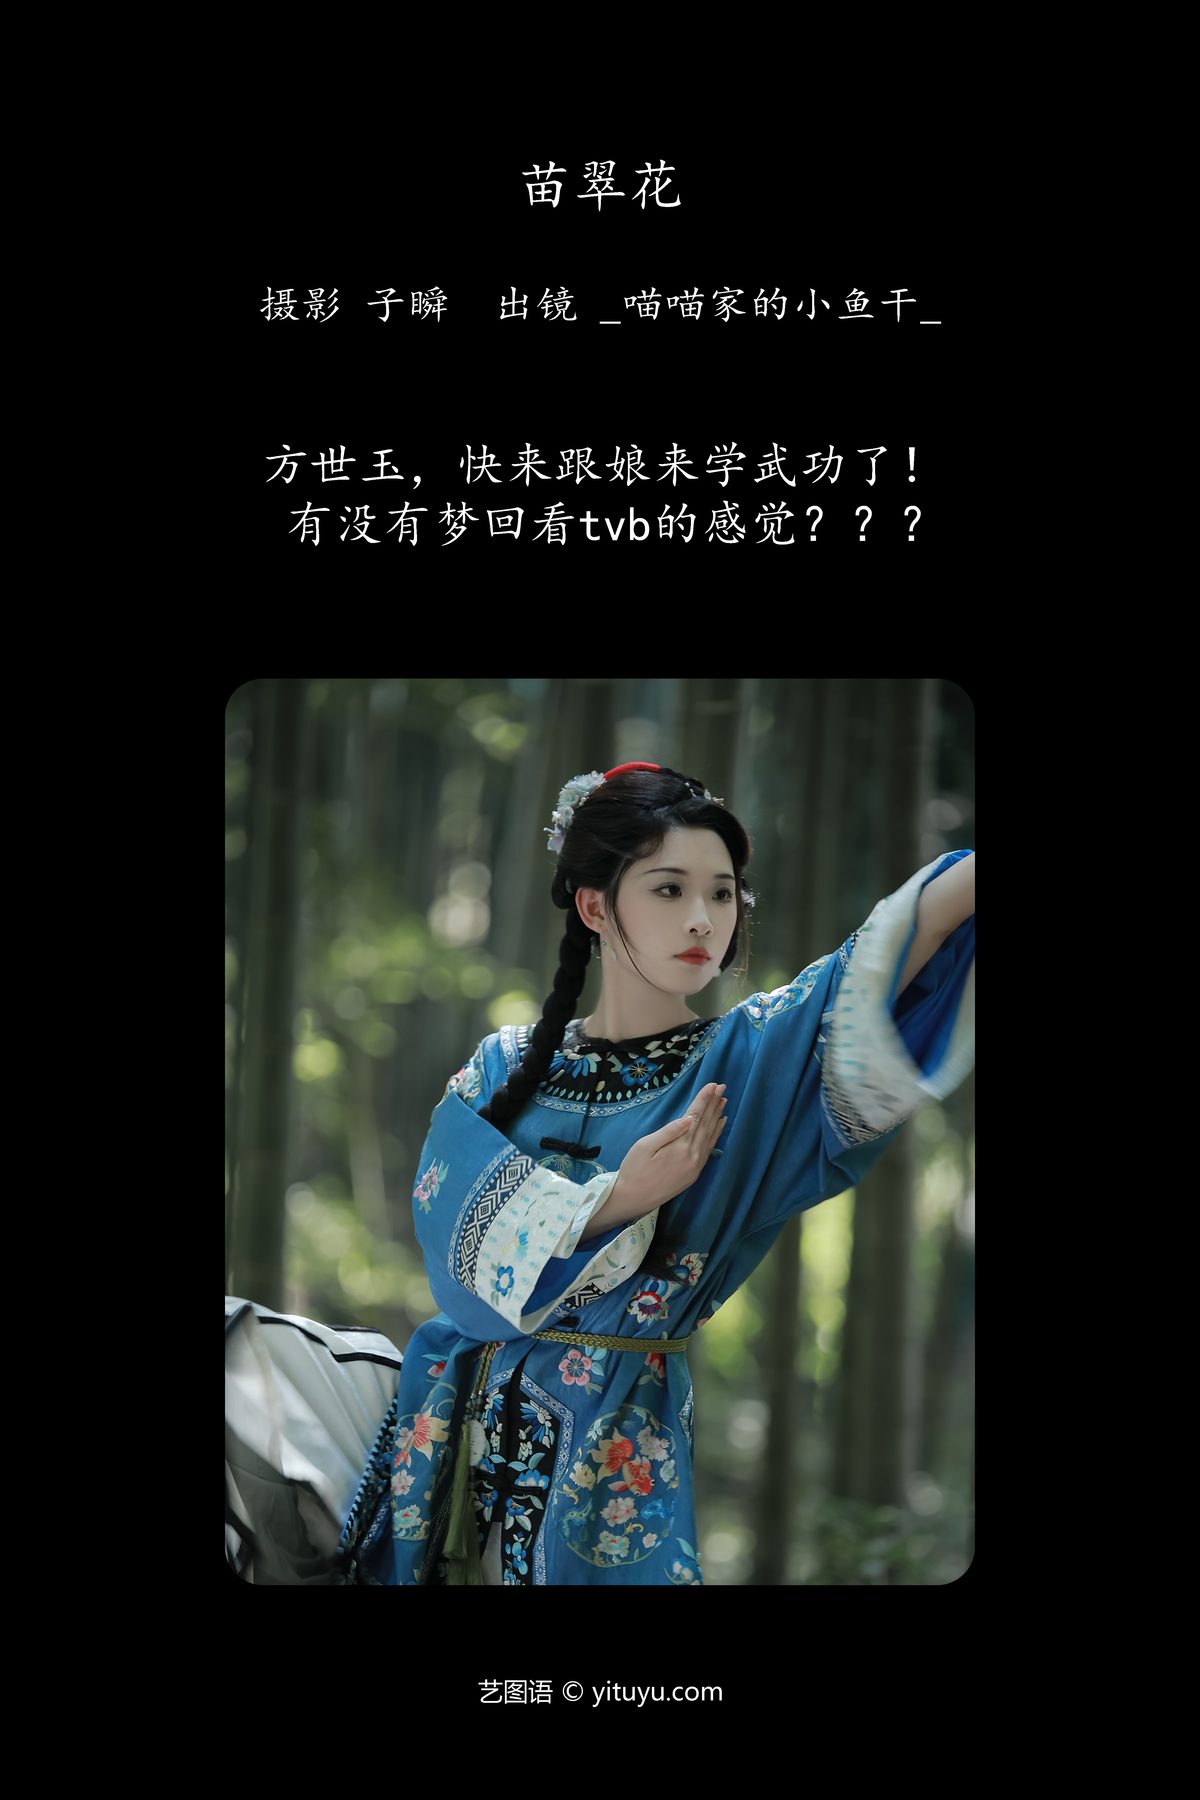 YiTuYu艺图语 Vol 5848 Miao Miao Jia De Xiao Yu Gan 0002 3937033983.jpg